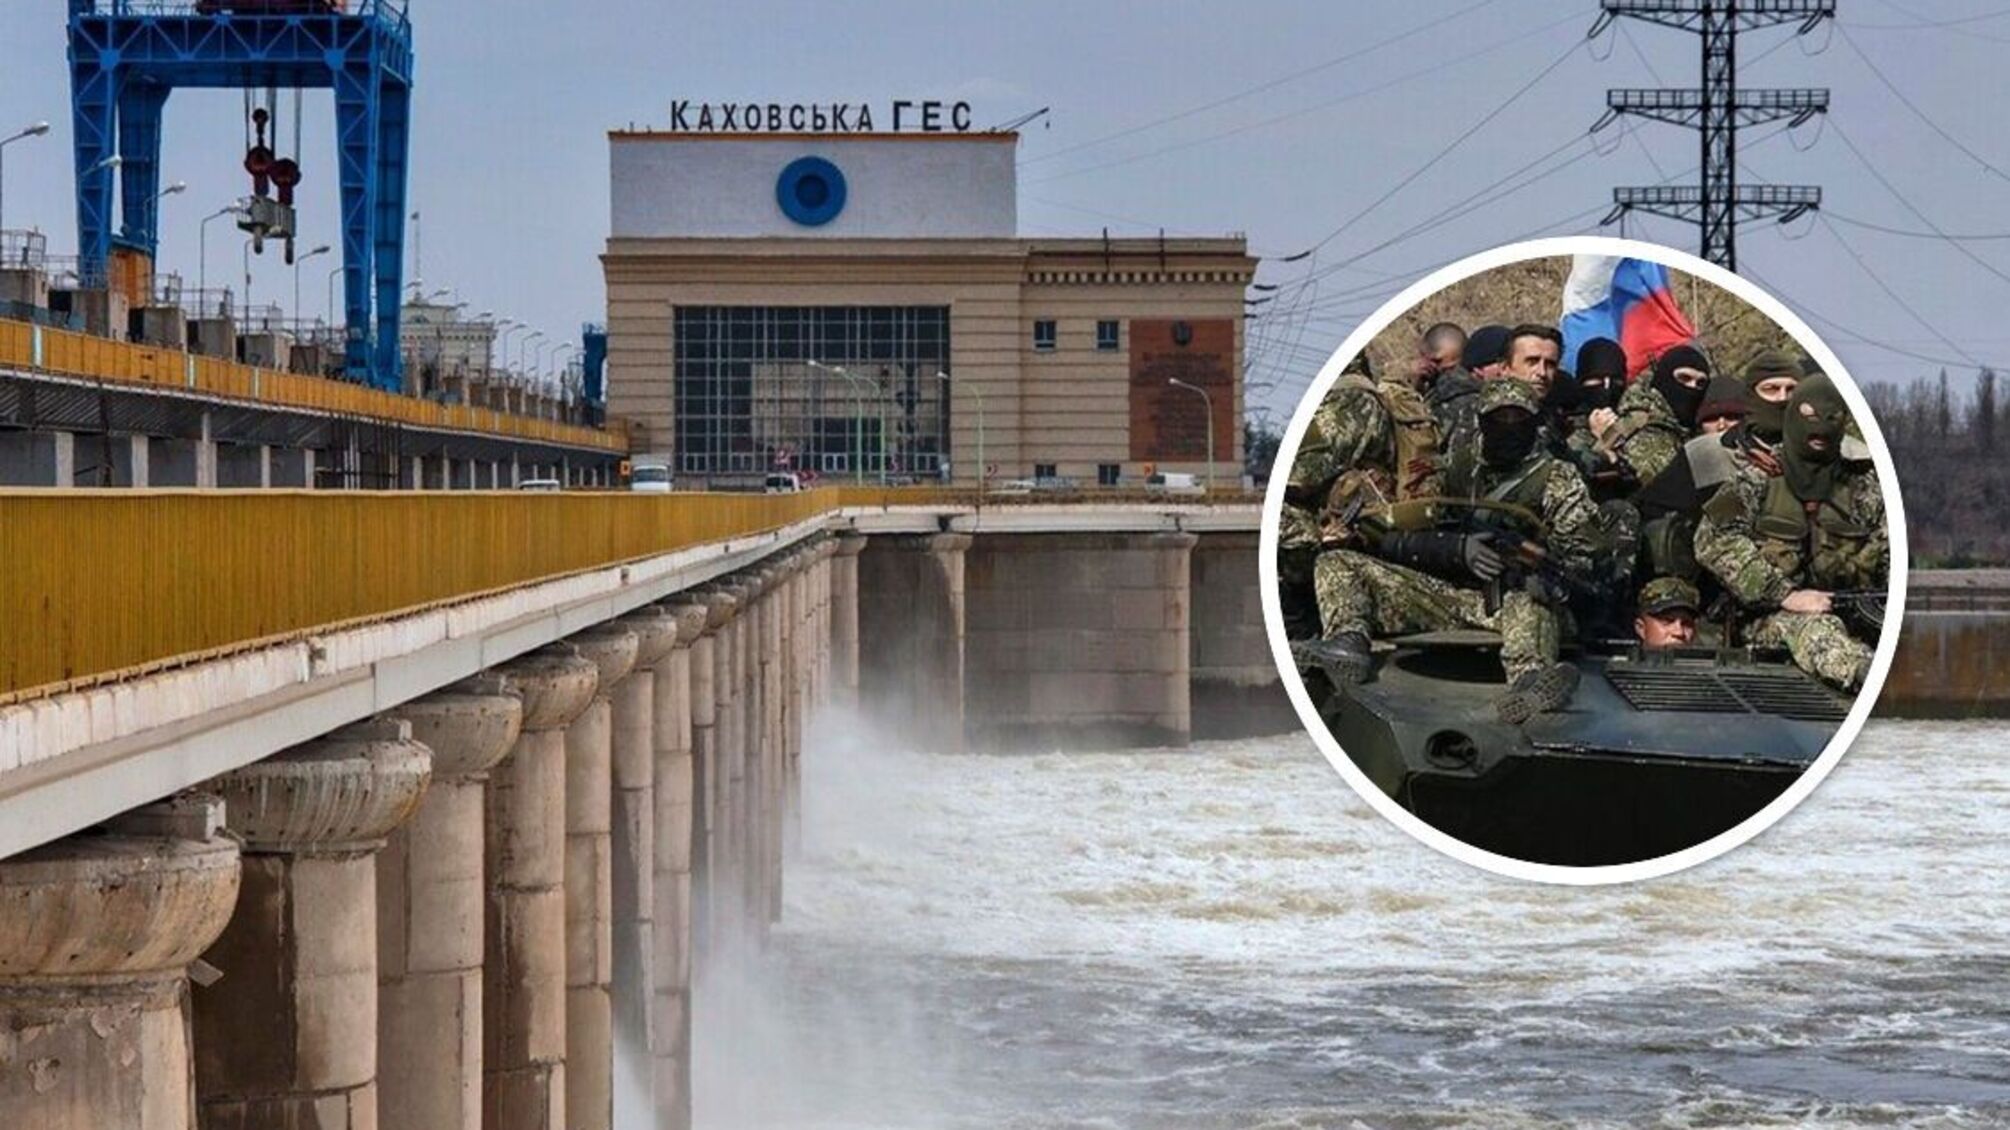 Каховська ГЕС: армія рф підірве споруду, затопить 88 населених пунктів та звинуватить ЗСУ - ISW